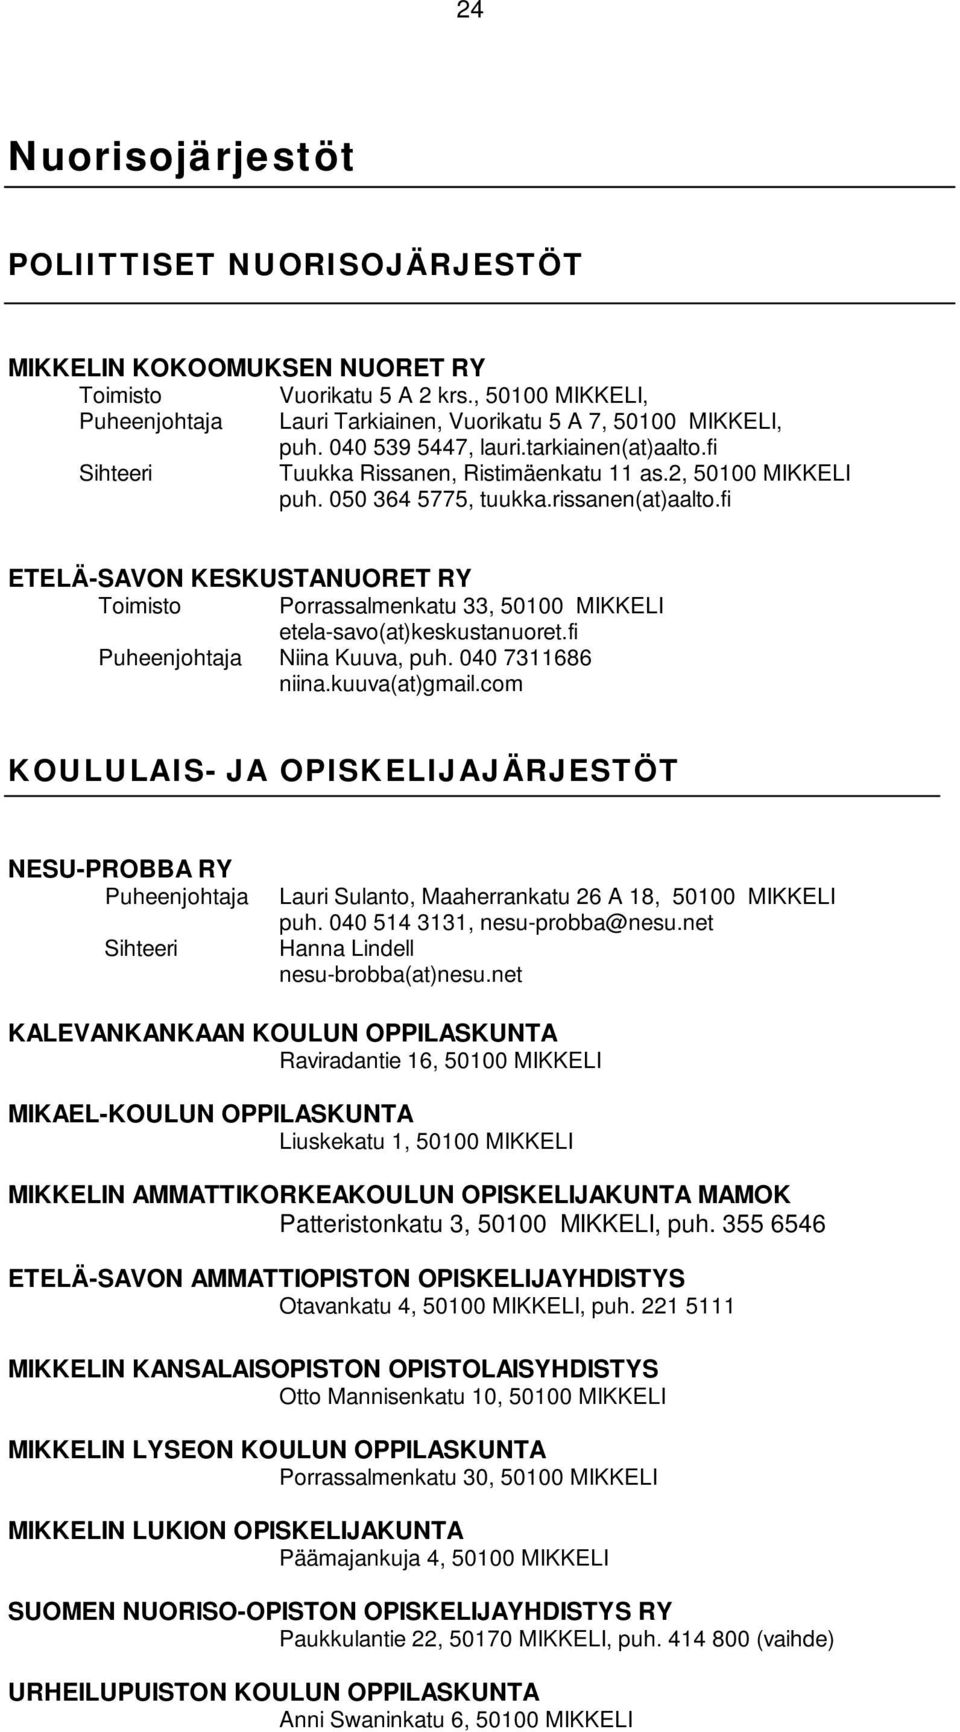 fi ETELÄ-SAVON KESKUSTANUORET RY Toimisto Porrassalmenkatu 33, 50100 MIKKELI etela-savo(at)keskustanuoret.fi Niina Kuuva, puh. 040 7311686 niina.kuuva(at)gmail.